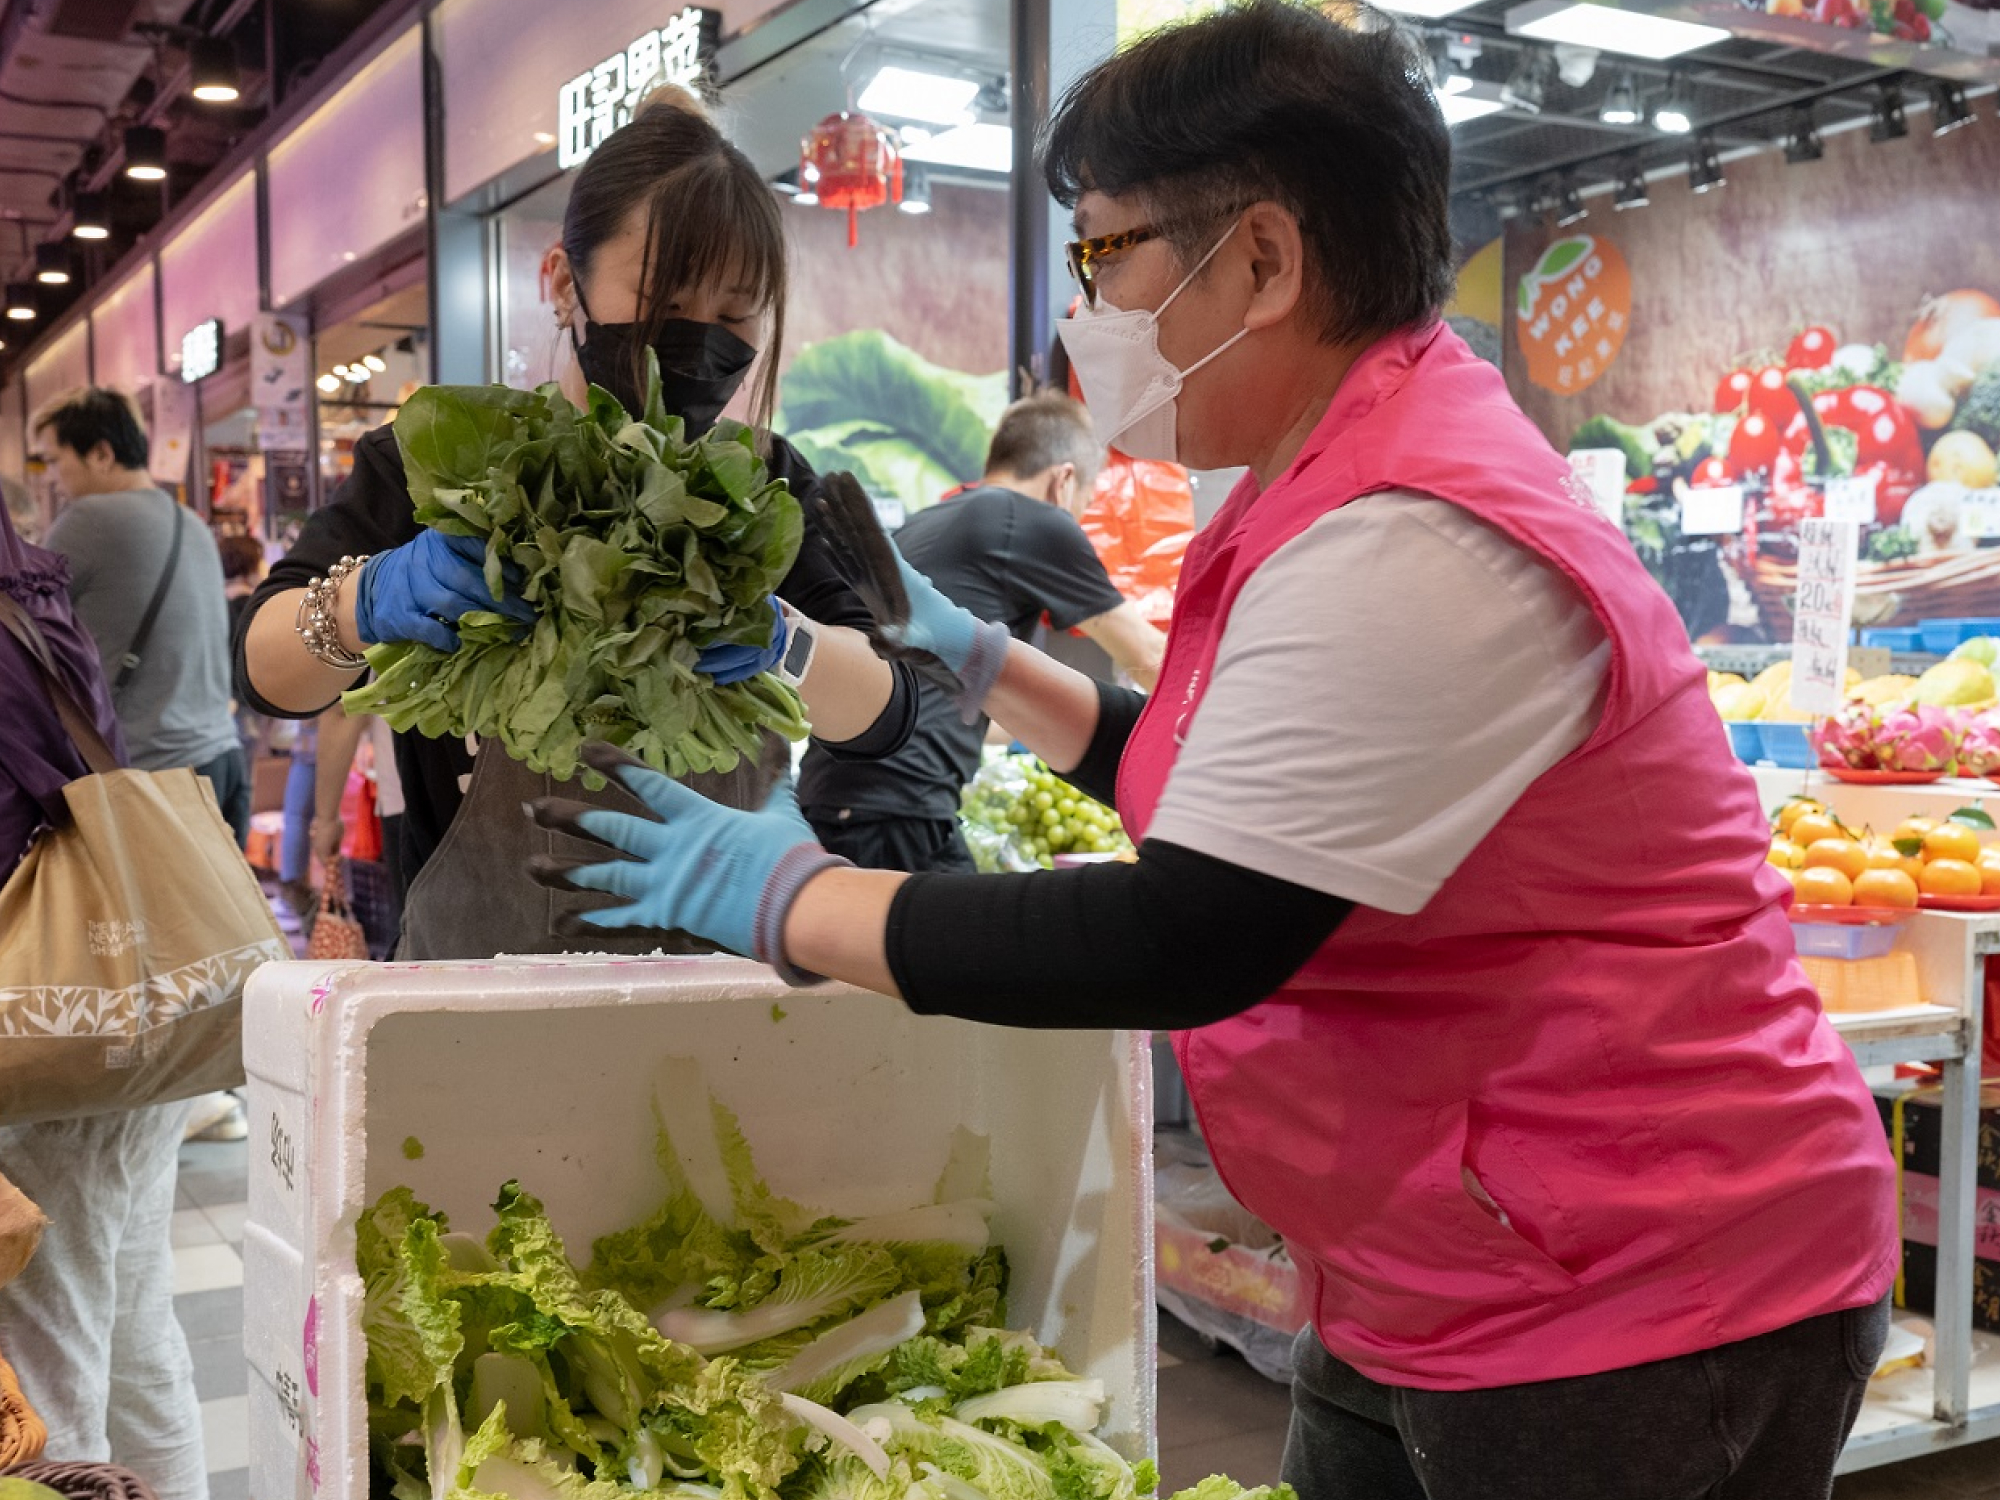 在一个繁忙的室内市场上，一位身穿粉色衬衫、戴着手套的小贩将新鲜蔬菜递给一位戴着头巾的妇女。两人都戴口罩。